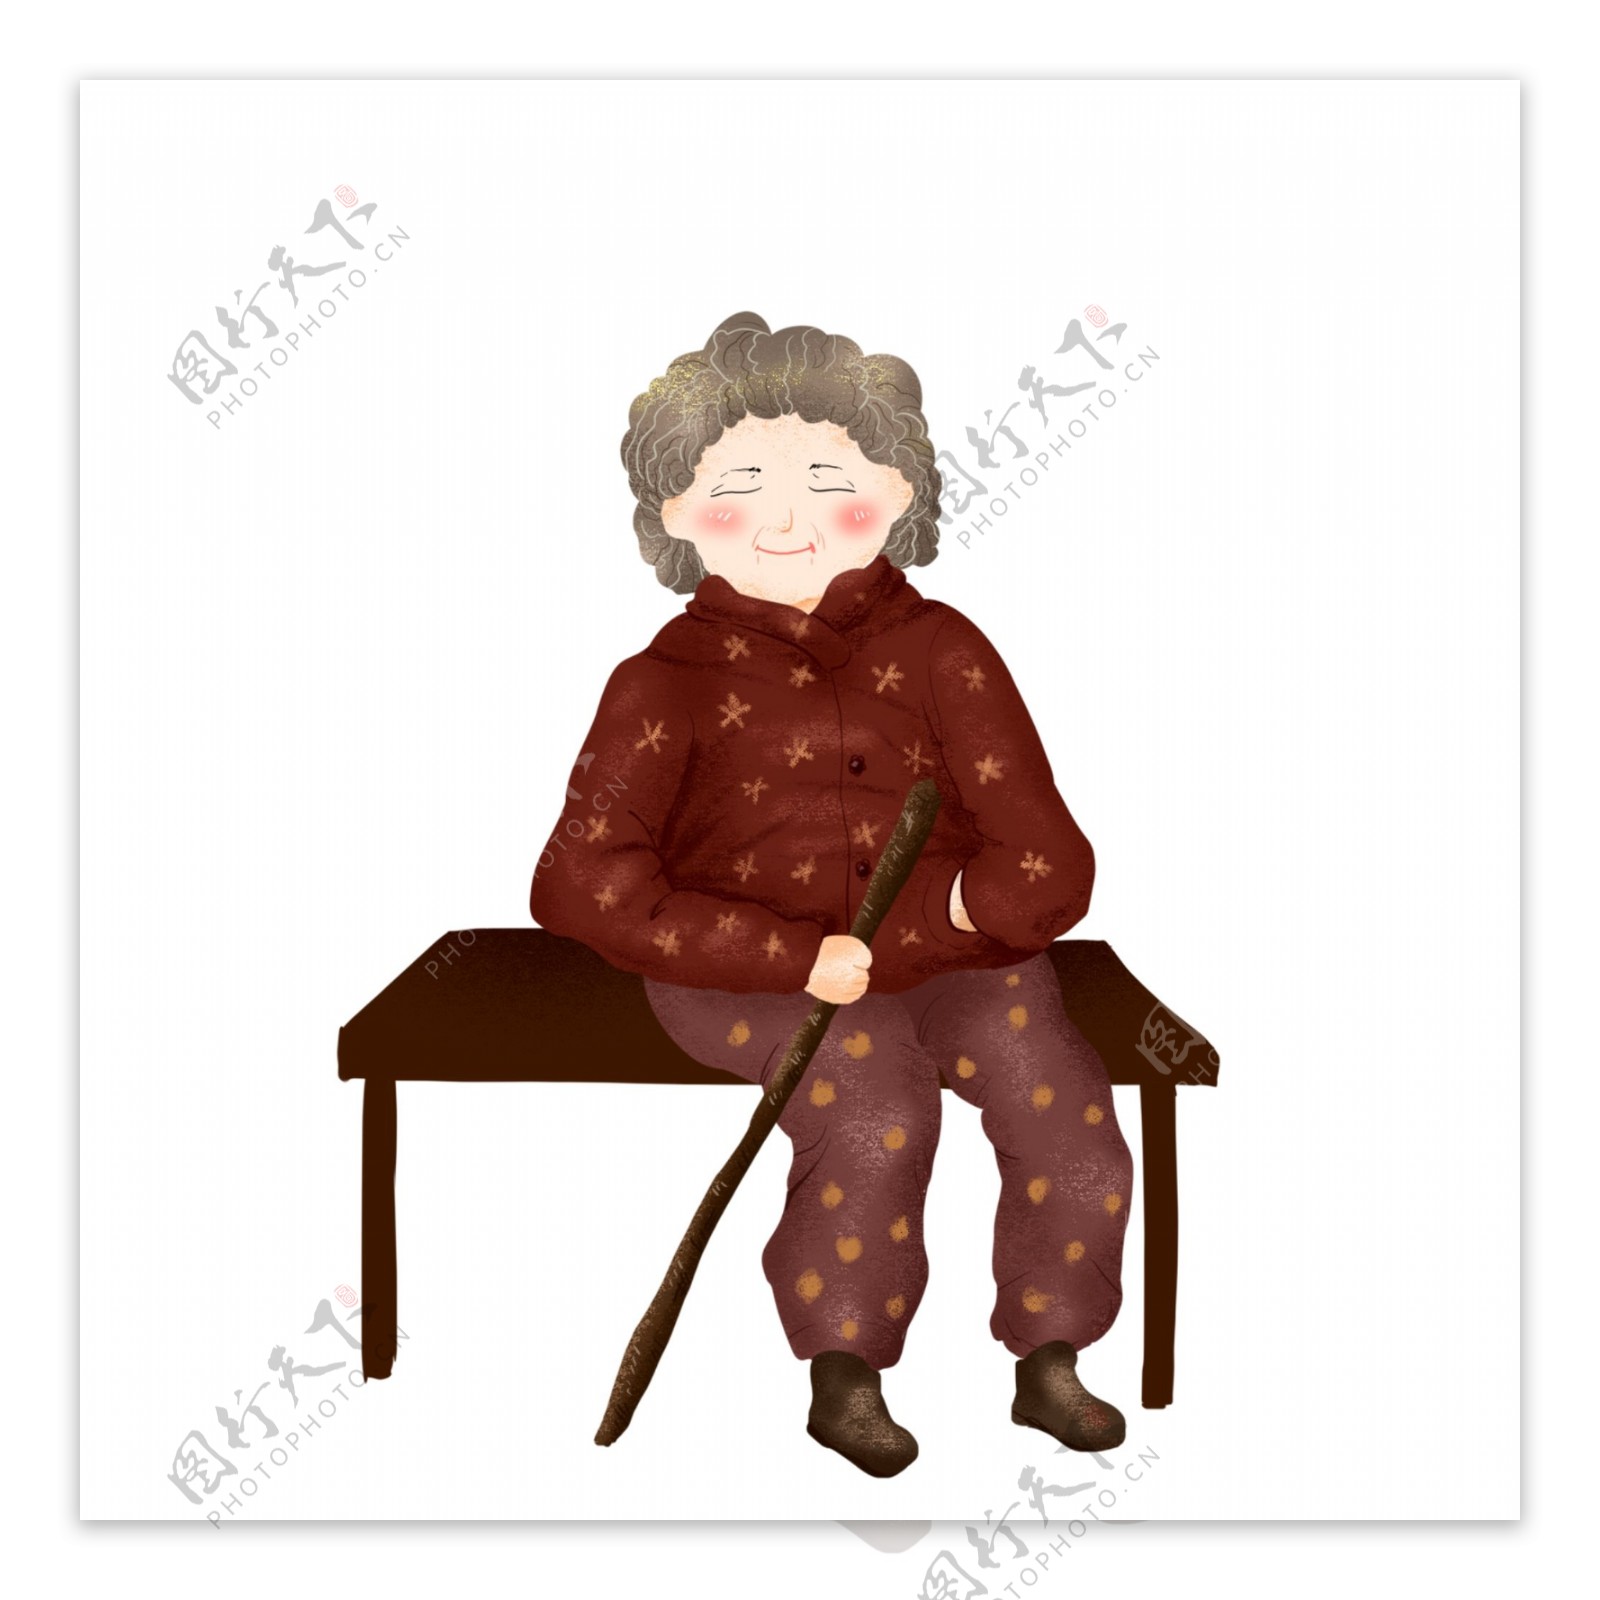 坐在椅子上的老奶奶人物元素